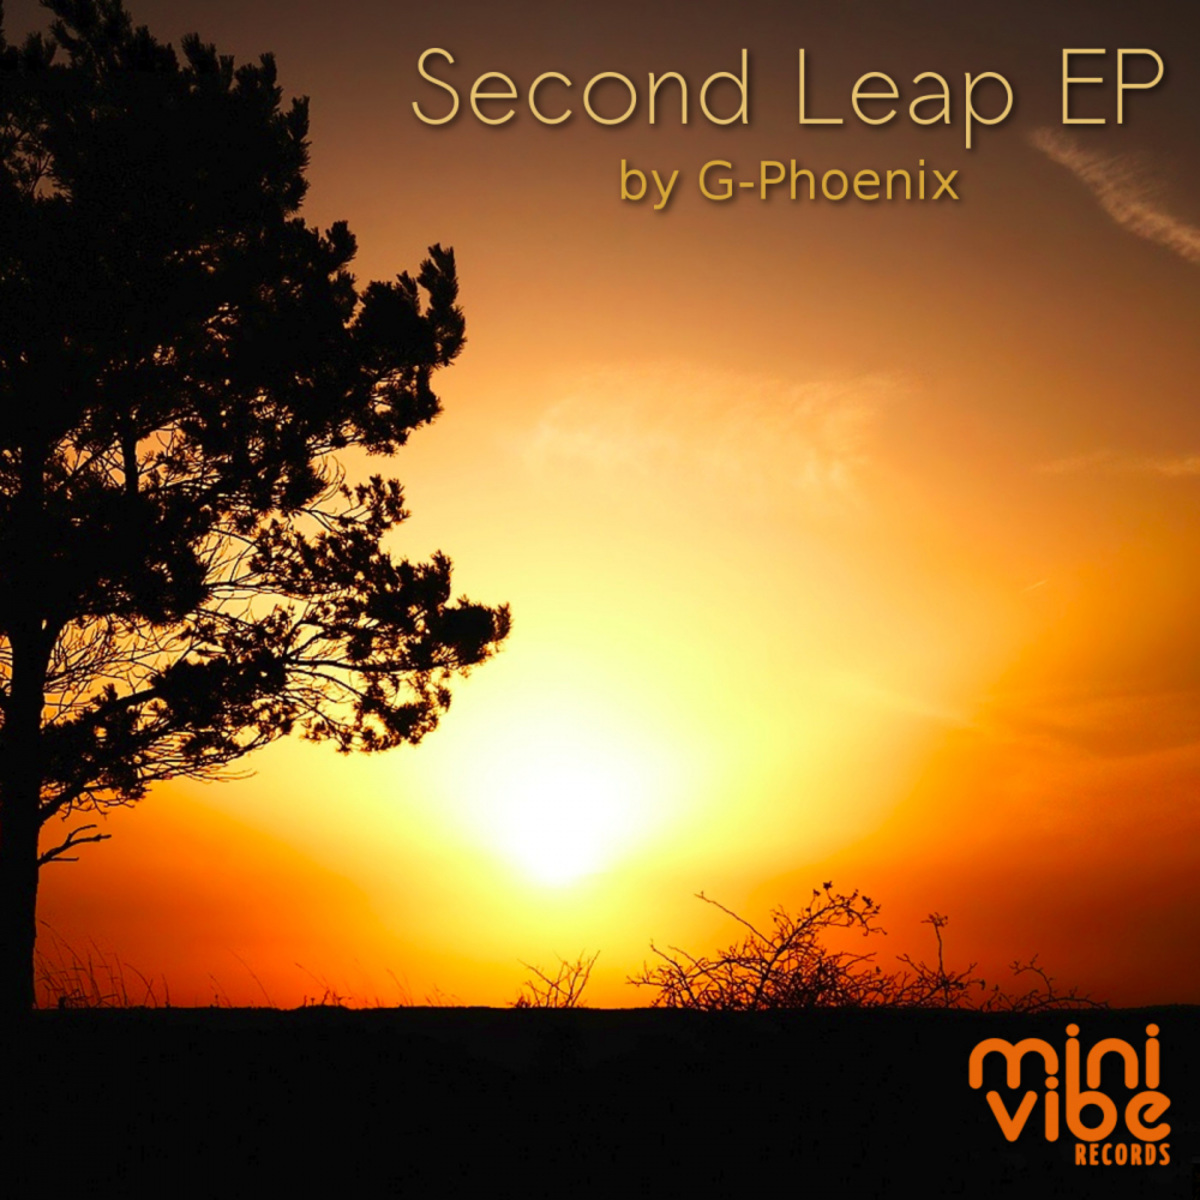 G-Phoenix - Second Leap / Mini Vibe Records